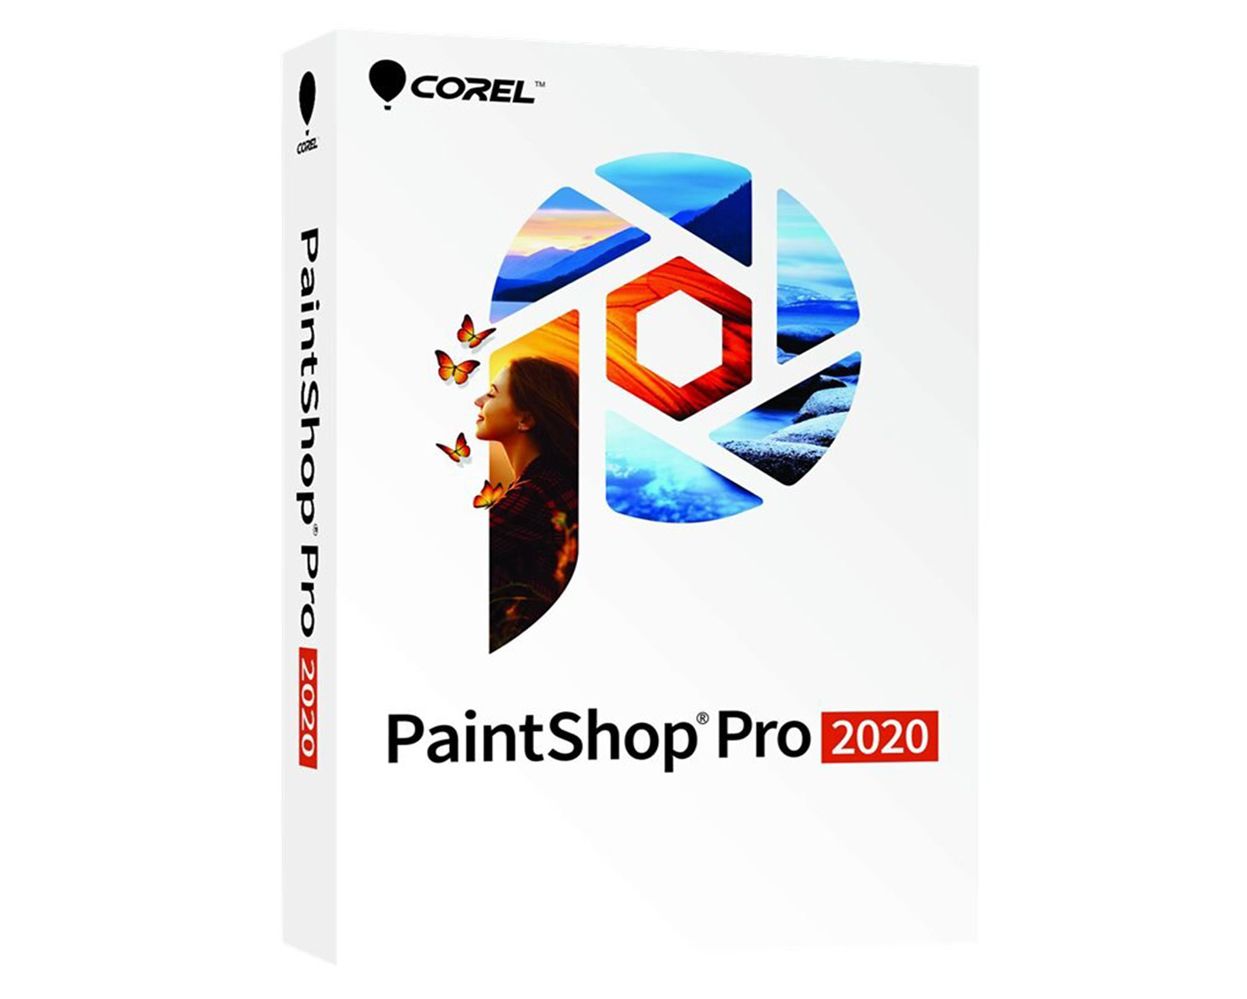 paint shop pro 2020 pop ups off